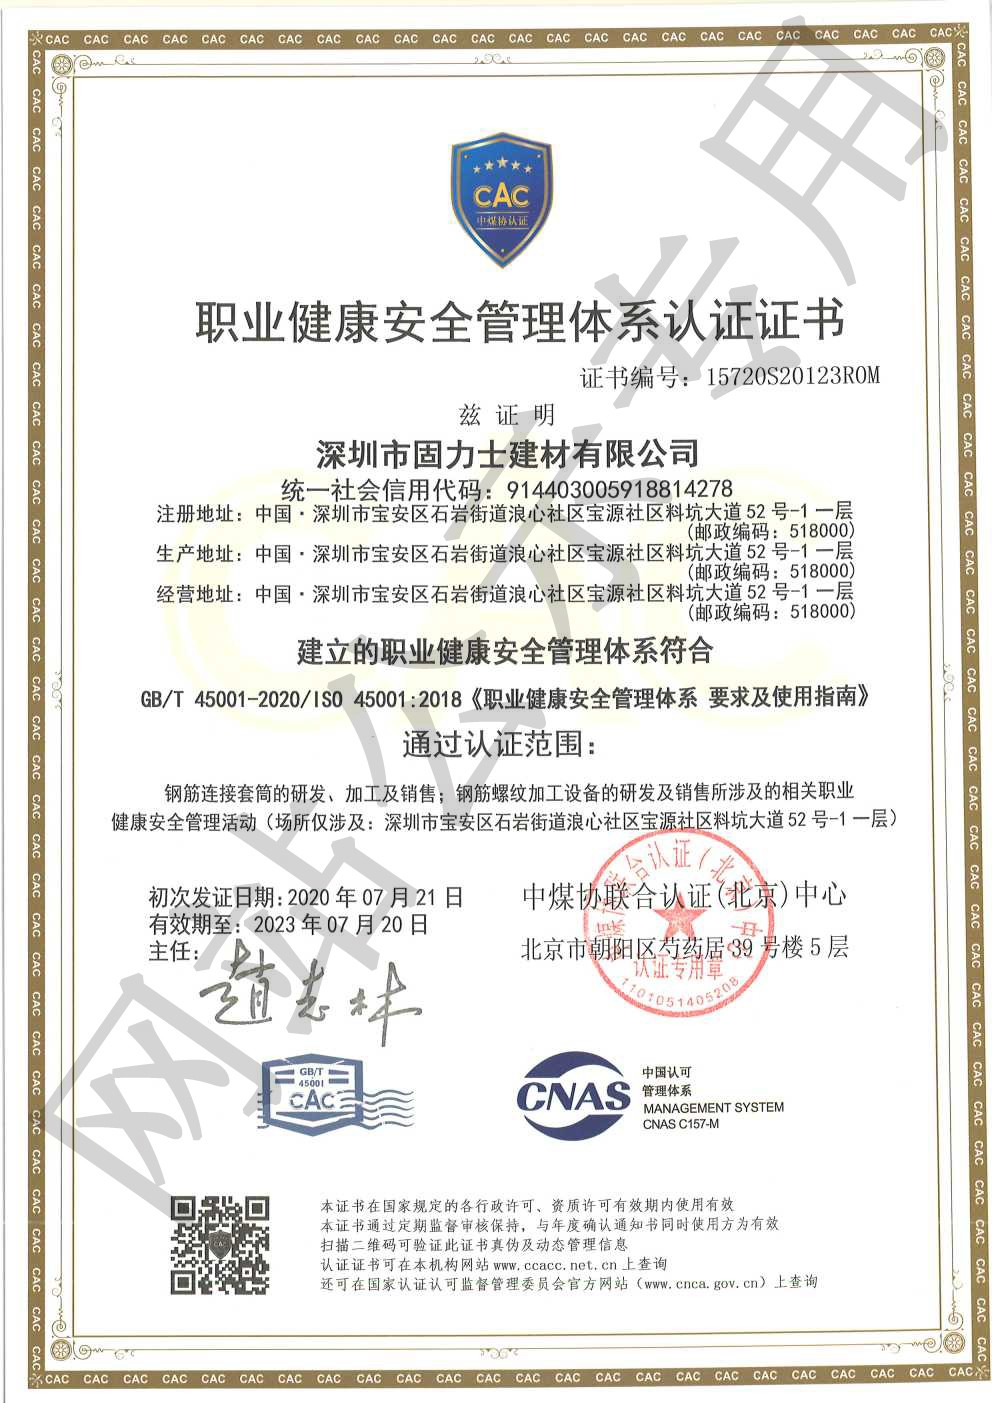 古田ISO45001证书